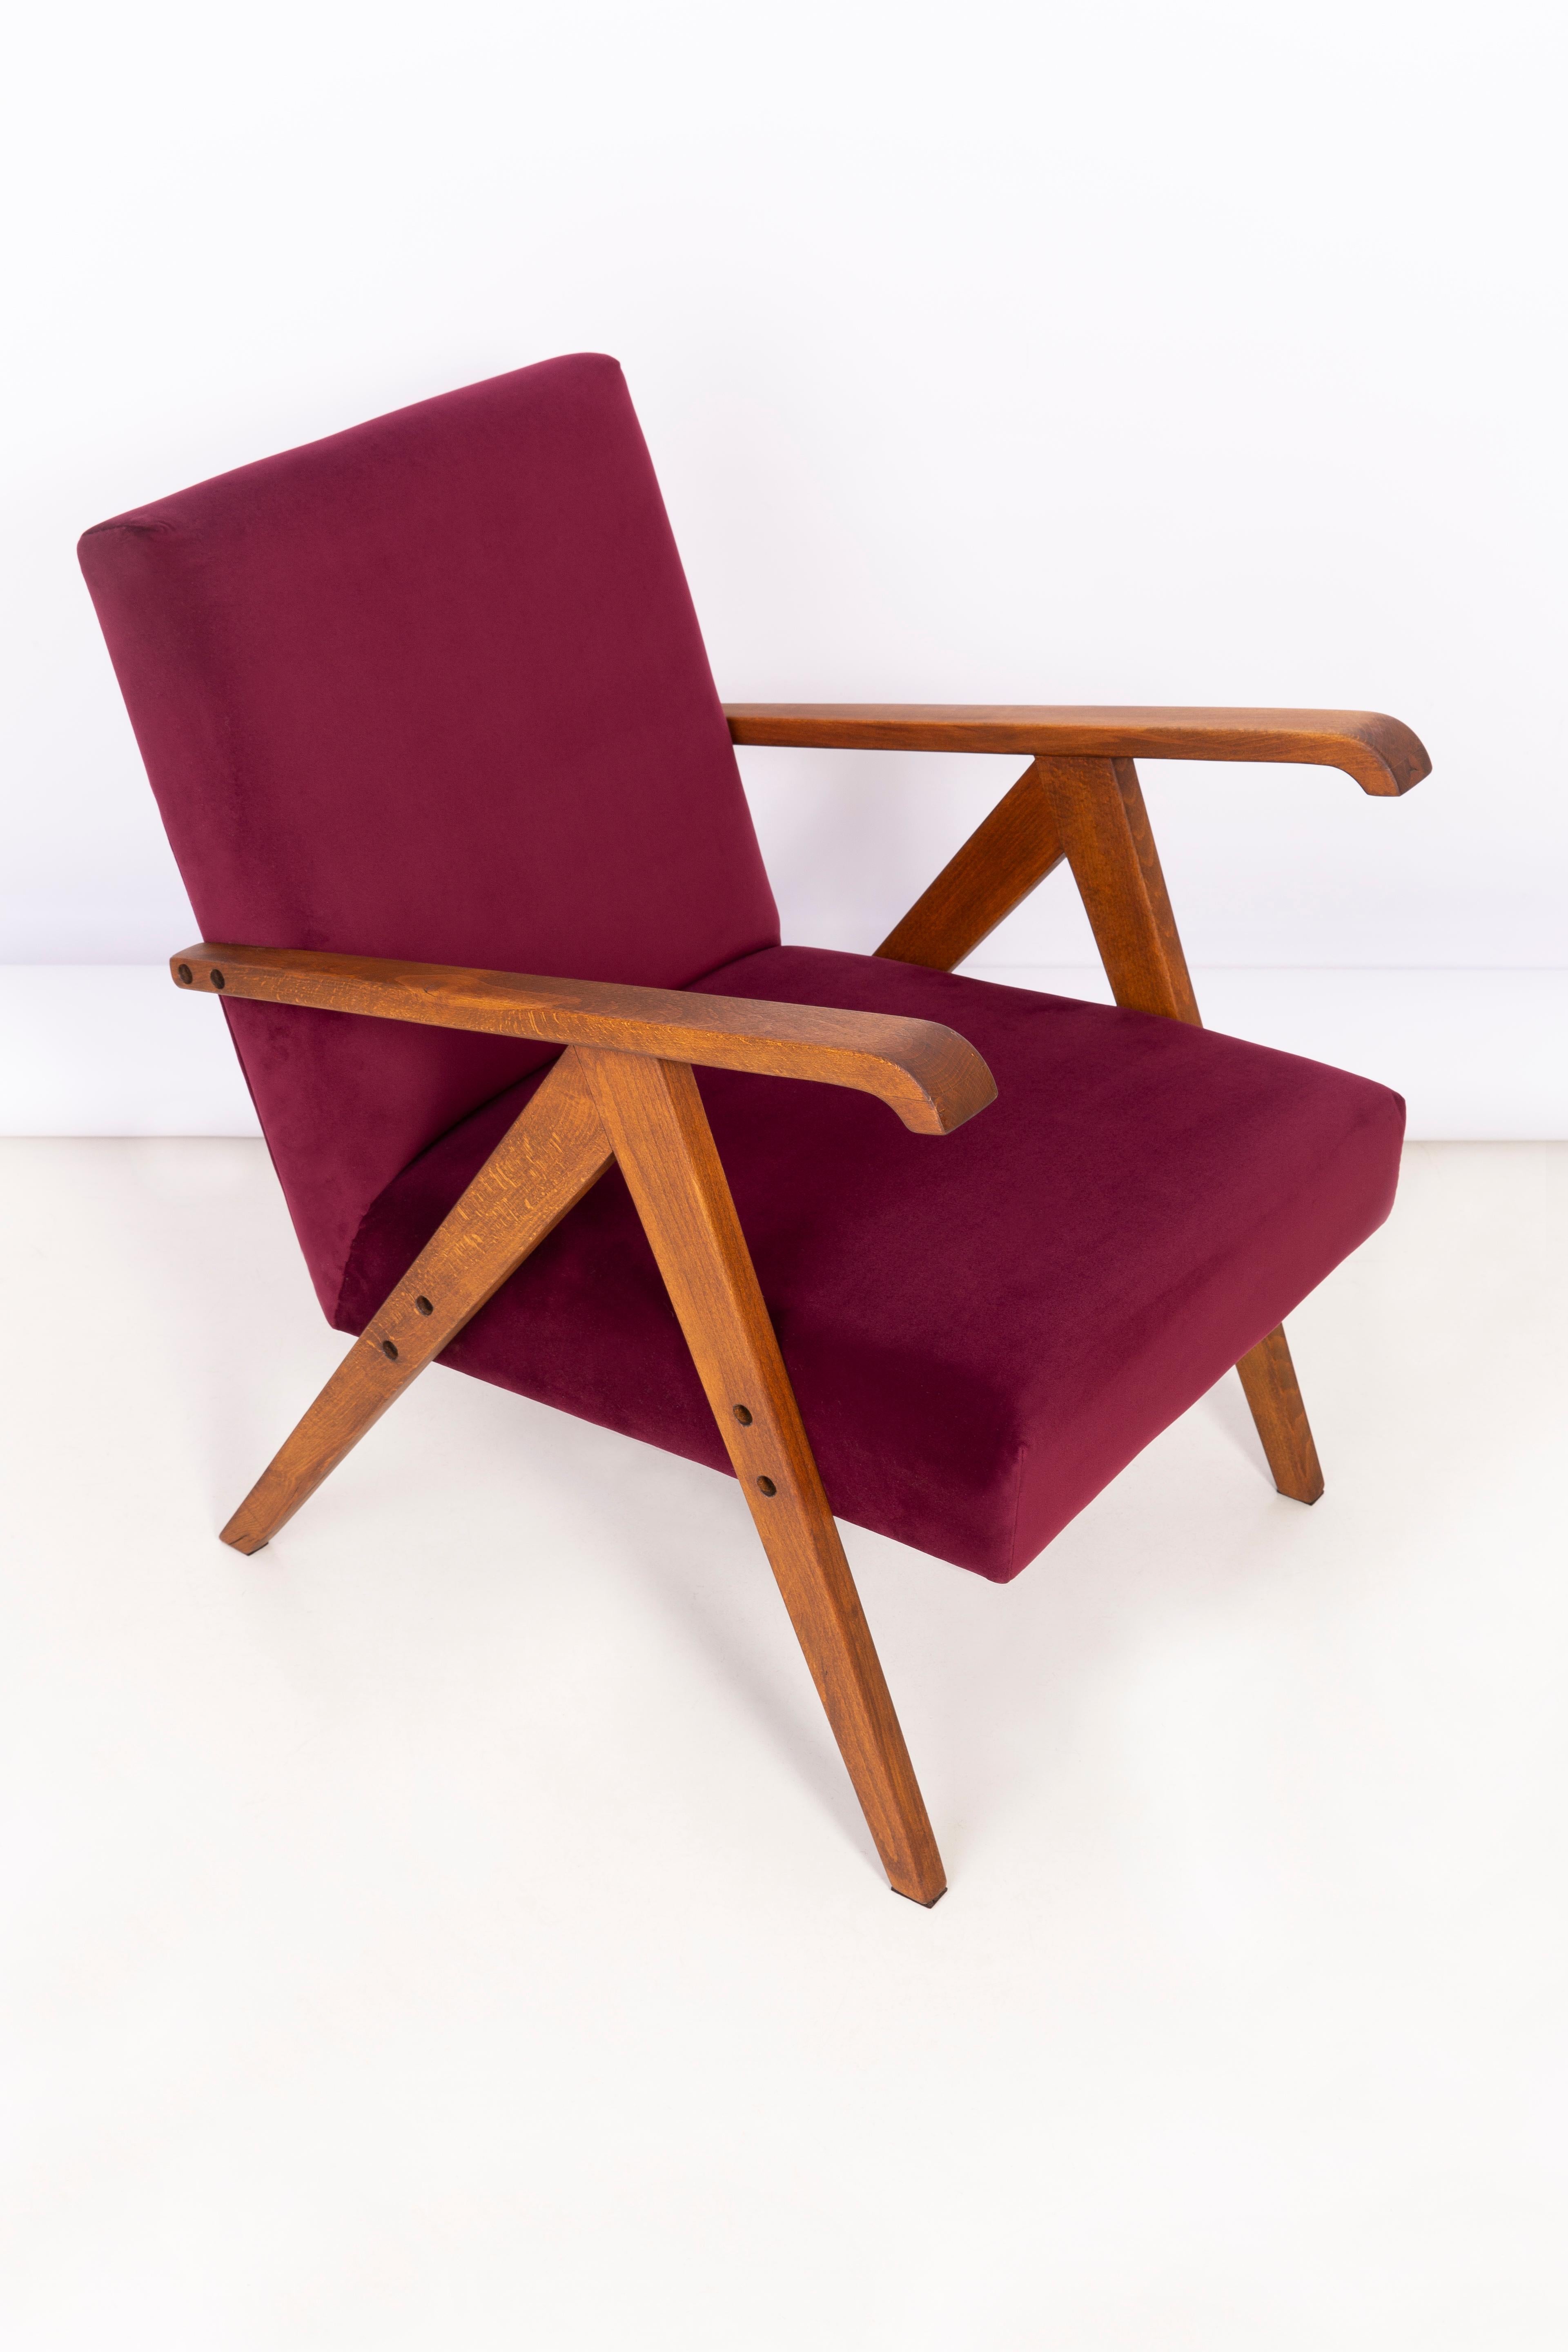 Un beau fauteuil restauré, conçu par Henryk Lis. Meubles après une rénovation complète de la menuiserie et de la tapisserie. Le tissu, qui est recouvert d'un dossier et d'une assise, est un revêtement en velours bordeaux de haute qualité (couleur